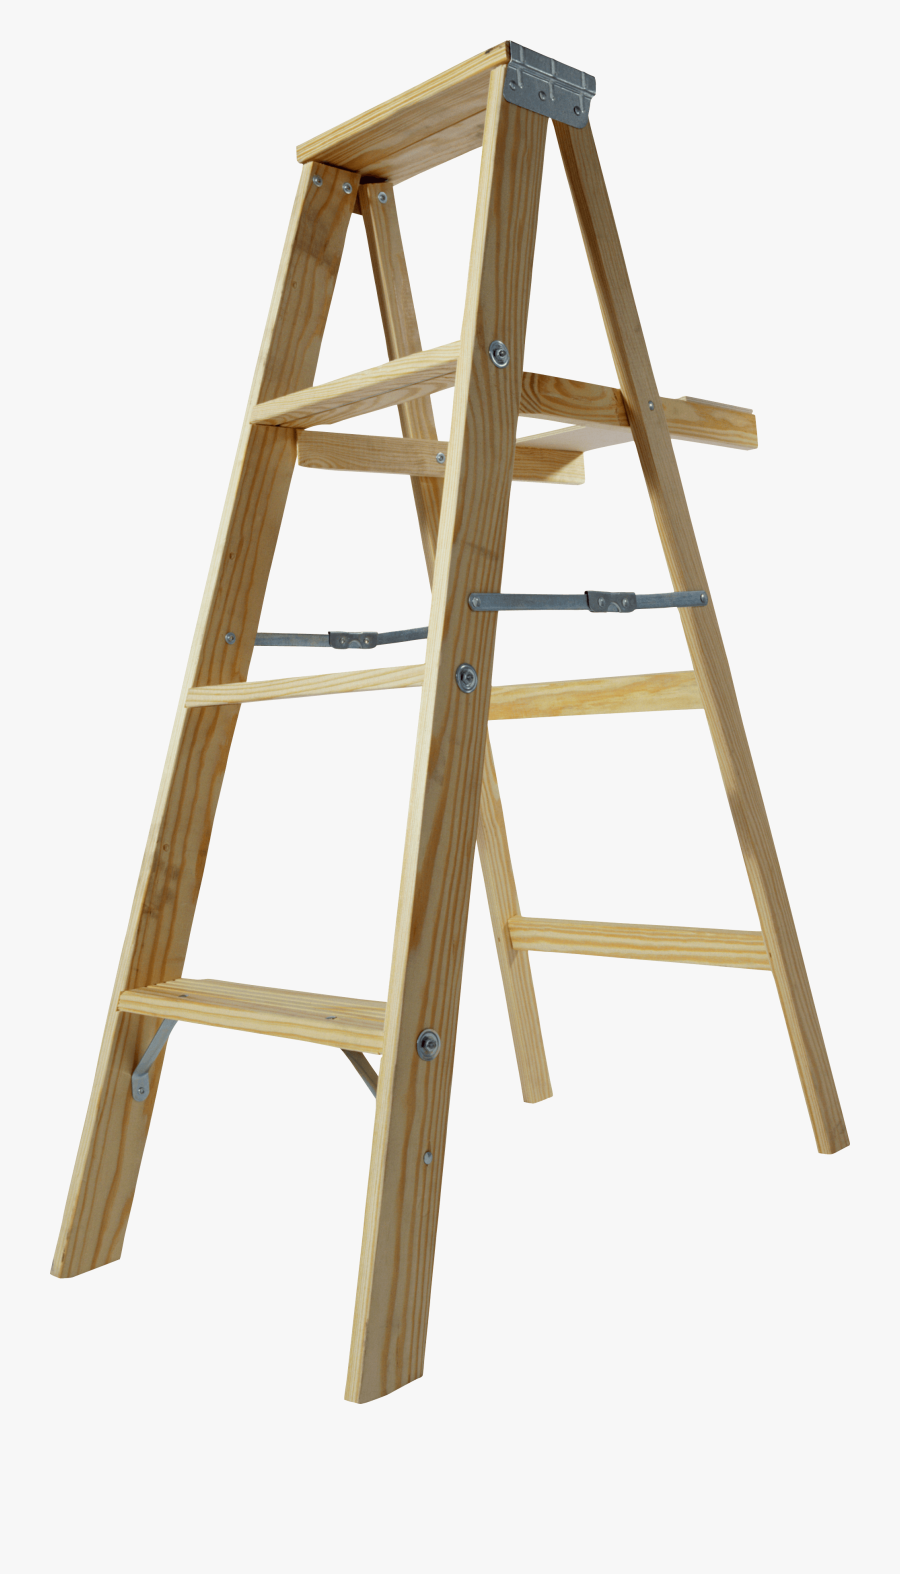 Ladder Png14776 - Transparent Background Wood Ladder Png, Transparent Clipart